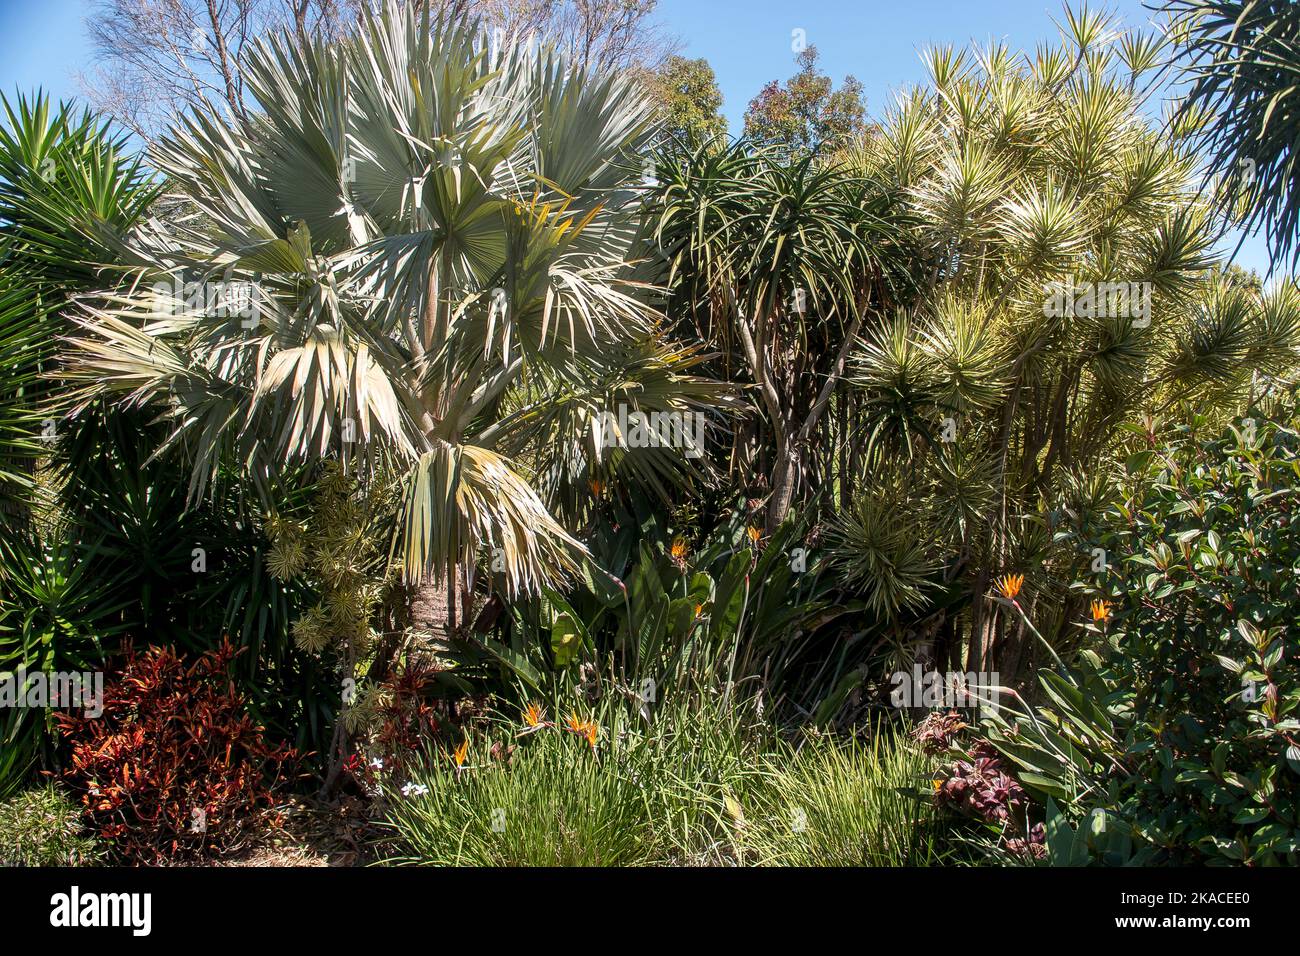 Gemischte Laubpflanzen im subtropischen australischen Privatgarten in Queensland. Exotische Spikey Blätter, gemischte Schattierungen von Grün. Effektives Screening. Stockfoto